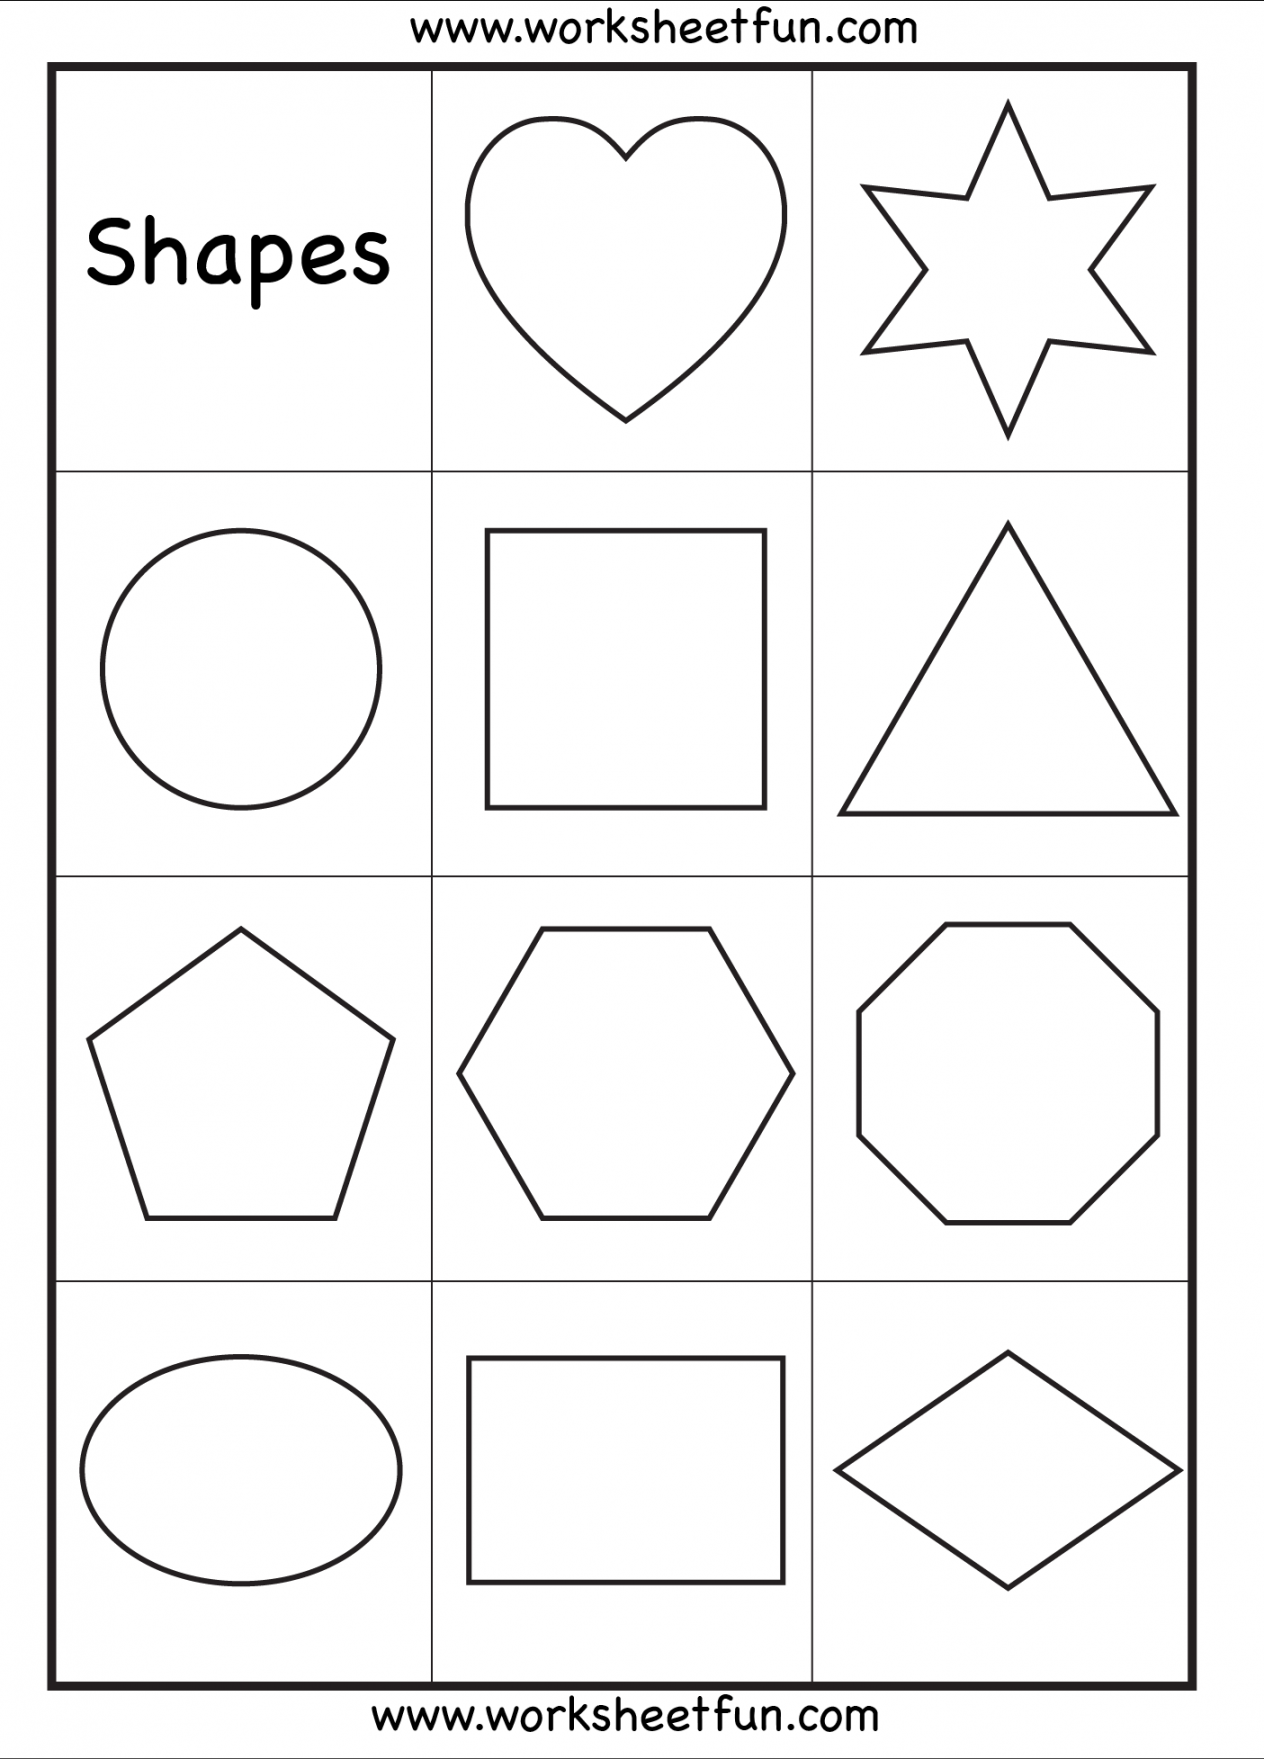 Preschool – Shapes Worksheet / FREE Printable Worksheets  Shapes  - FREE Printables - Free Printable Shapes Worksheets